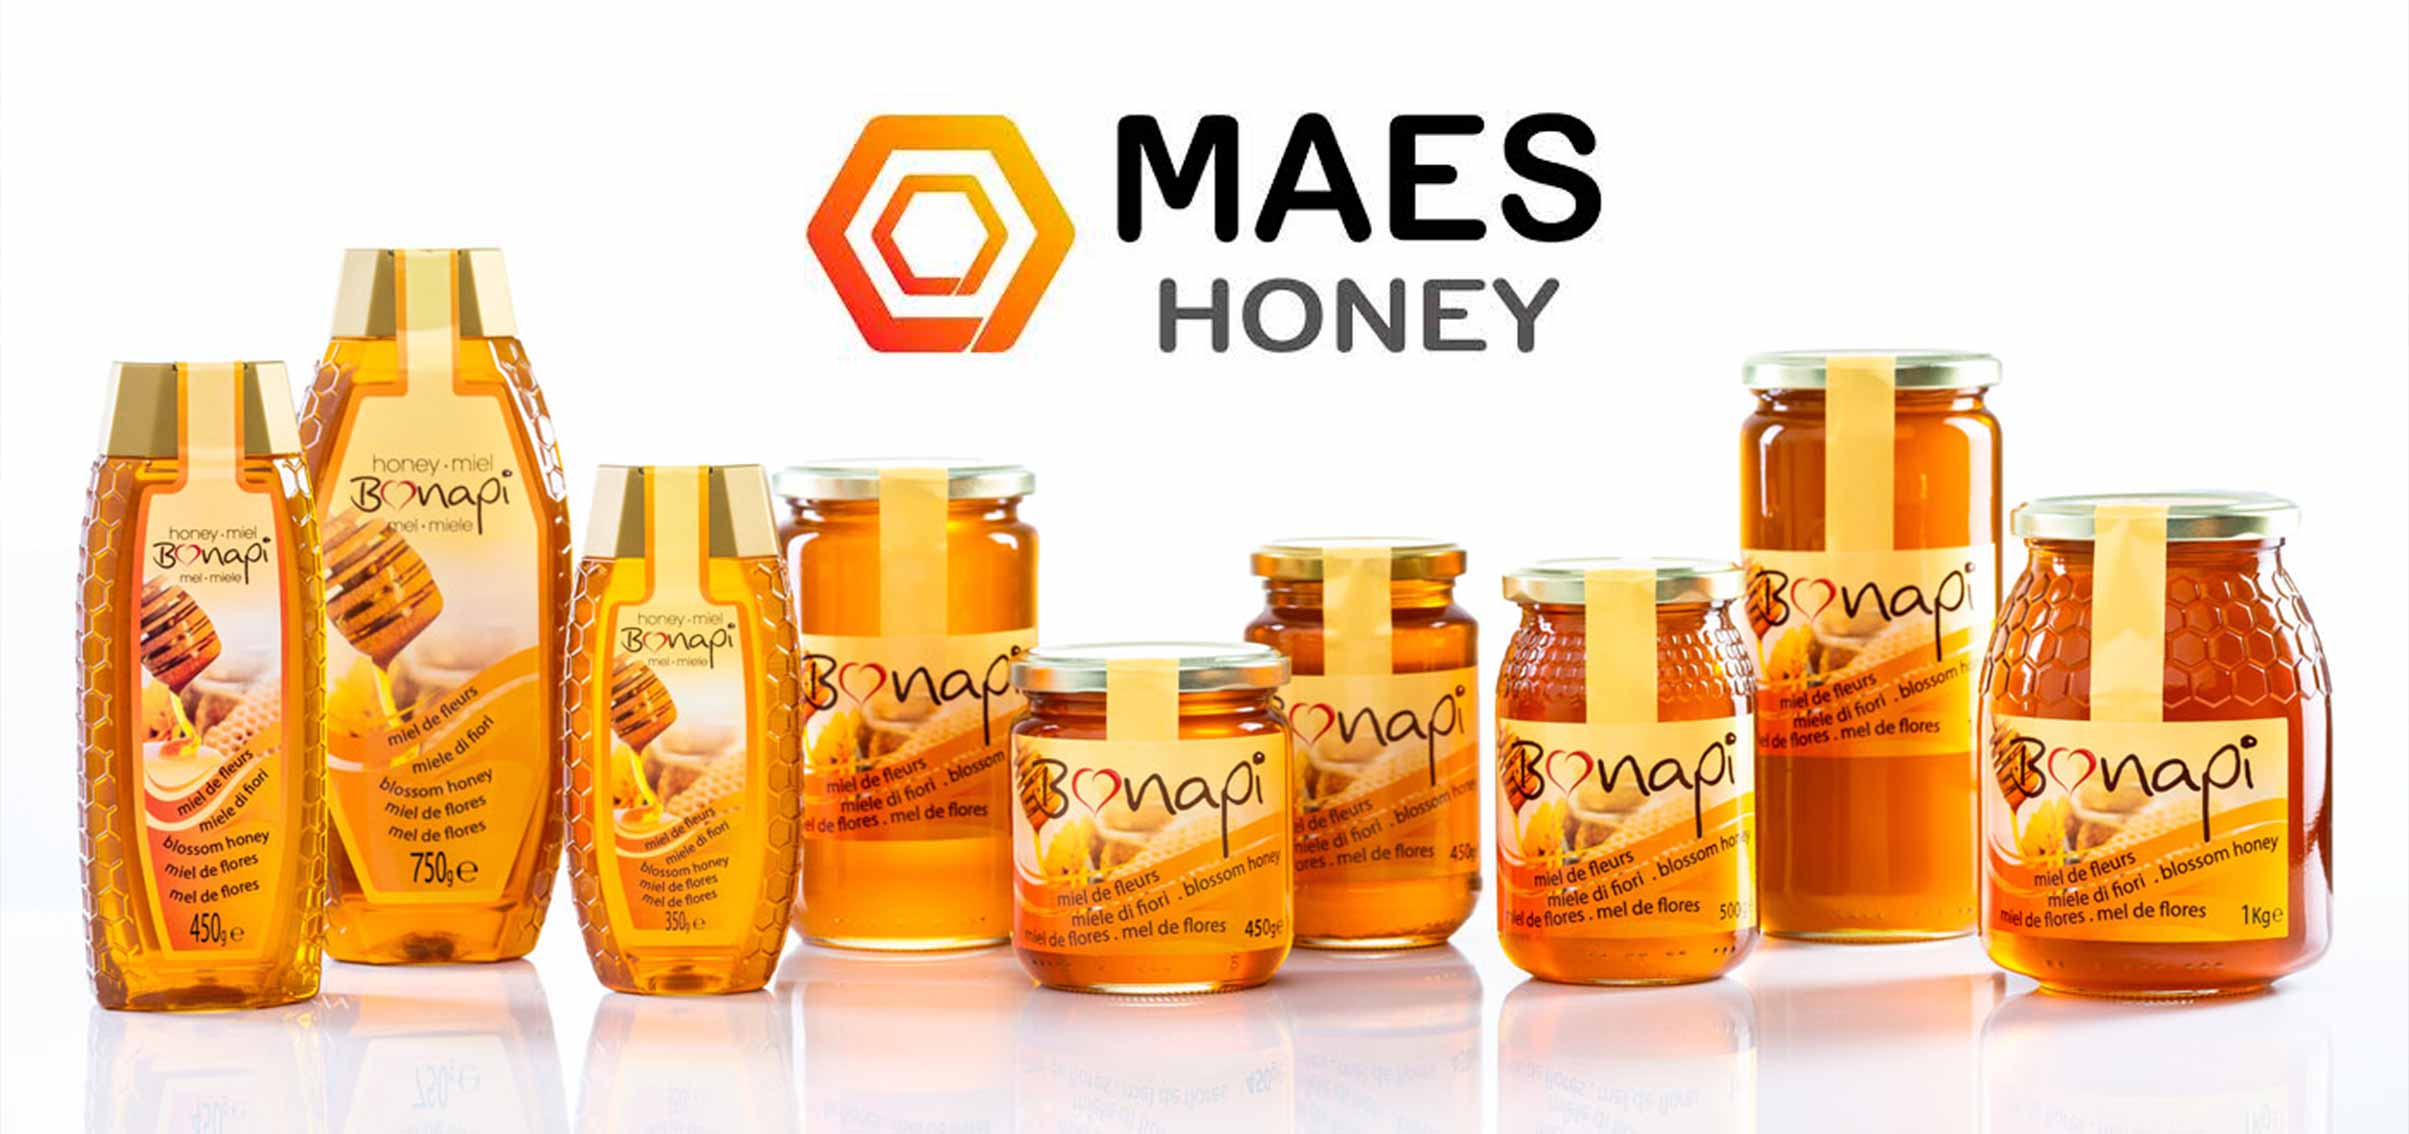 Maes Honey, líderes en exportación de miel